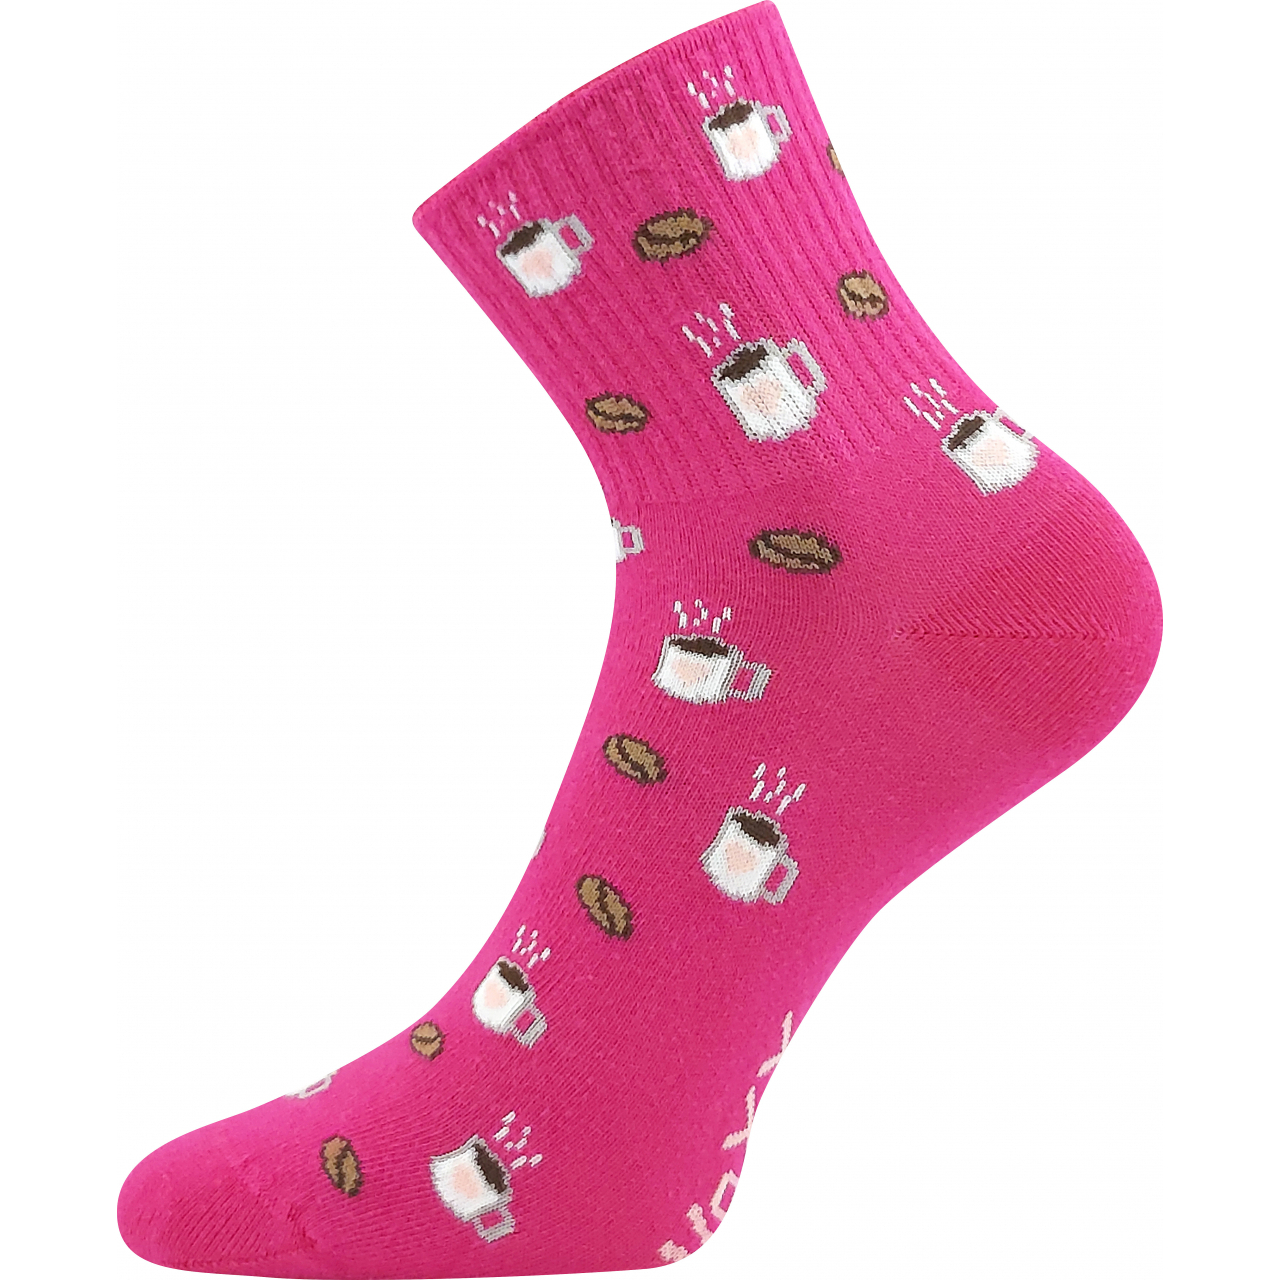 Ponožky dámské Boma Agapi Káva - růžové, 39-42